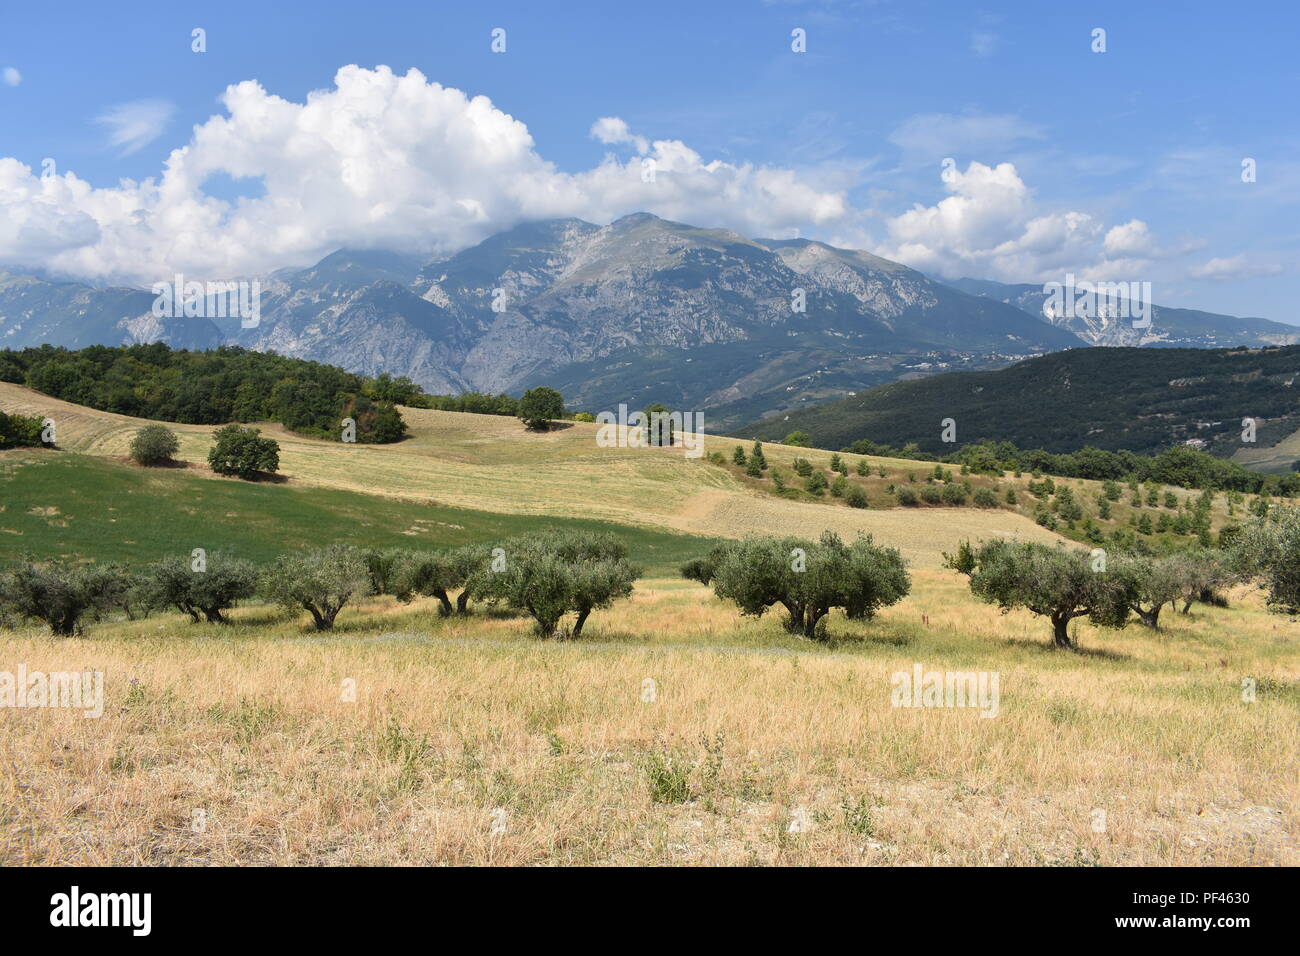 Alberi di ulivo con il Parco Nazionale della Maiella in background. Casoli, Italia 2018 Foto Stock